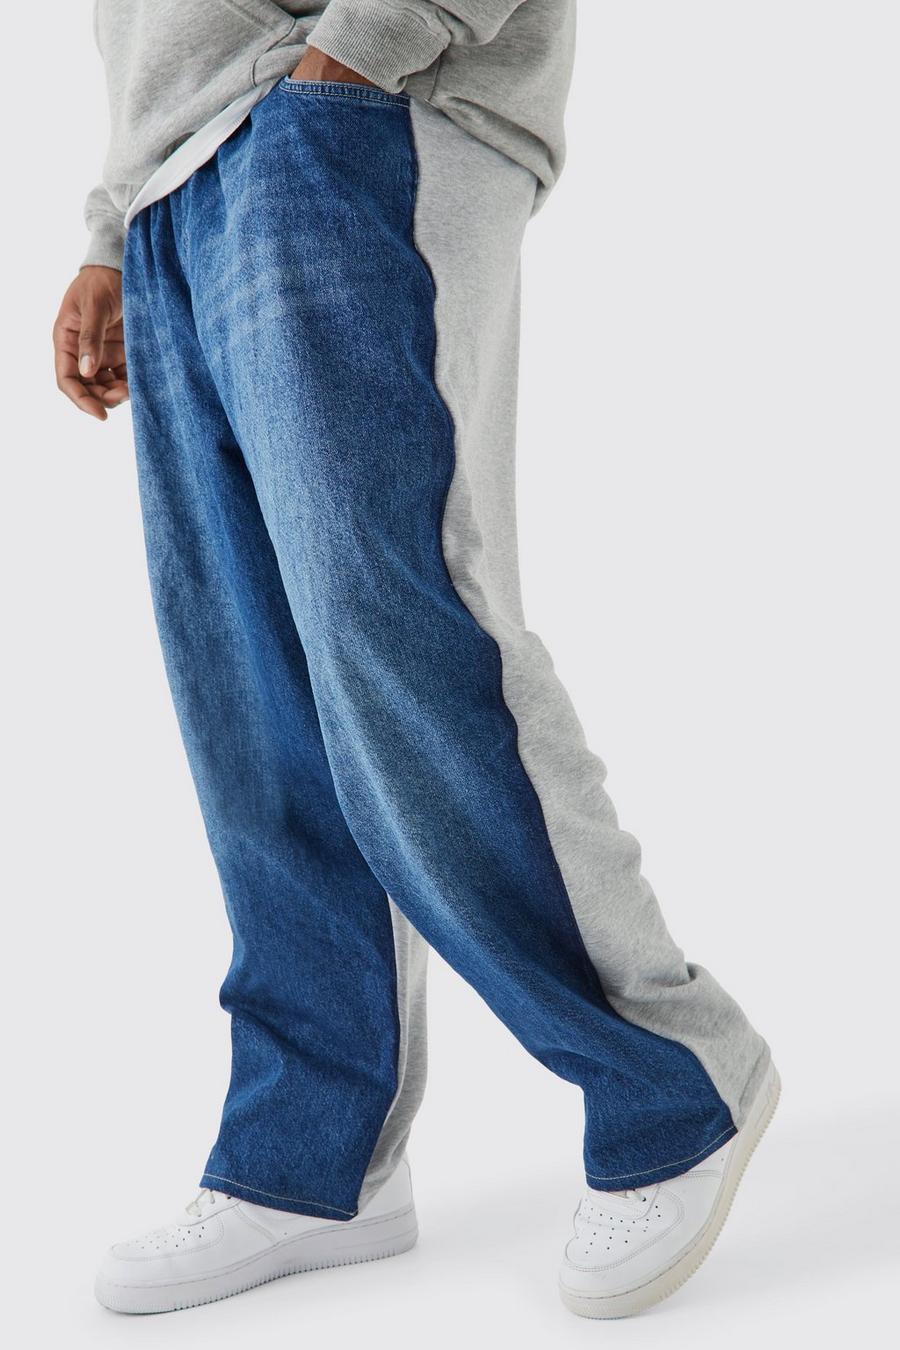 Pantalón deportivo Plus holgado con cintura elástica y estampado híbrido, Dark blue azzurro